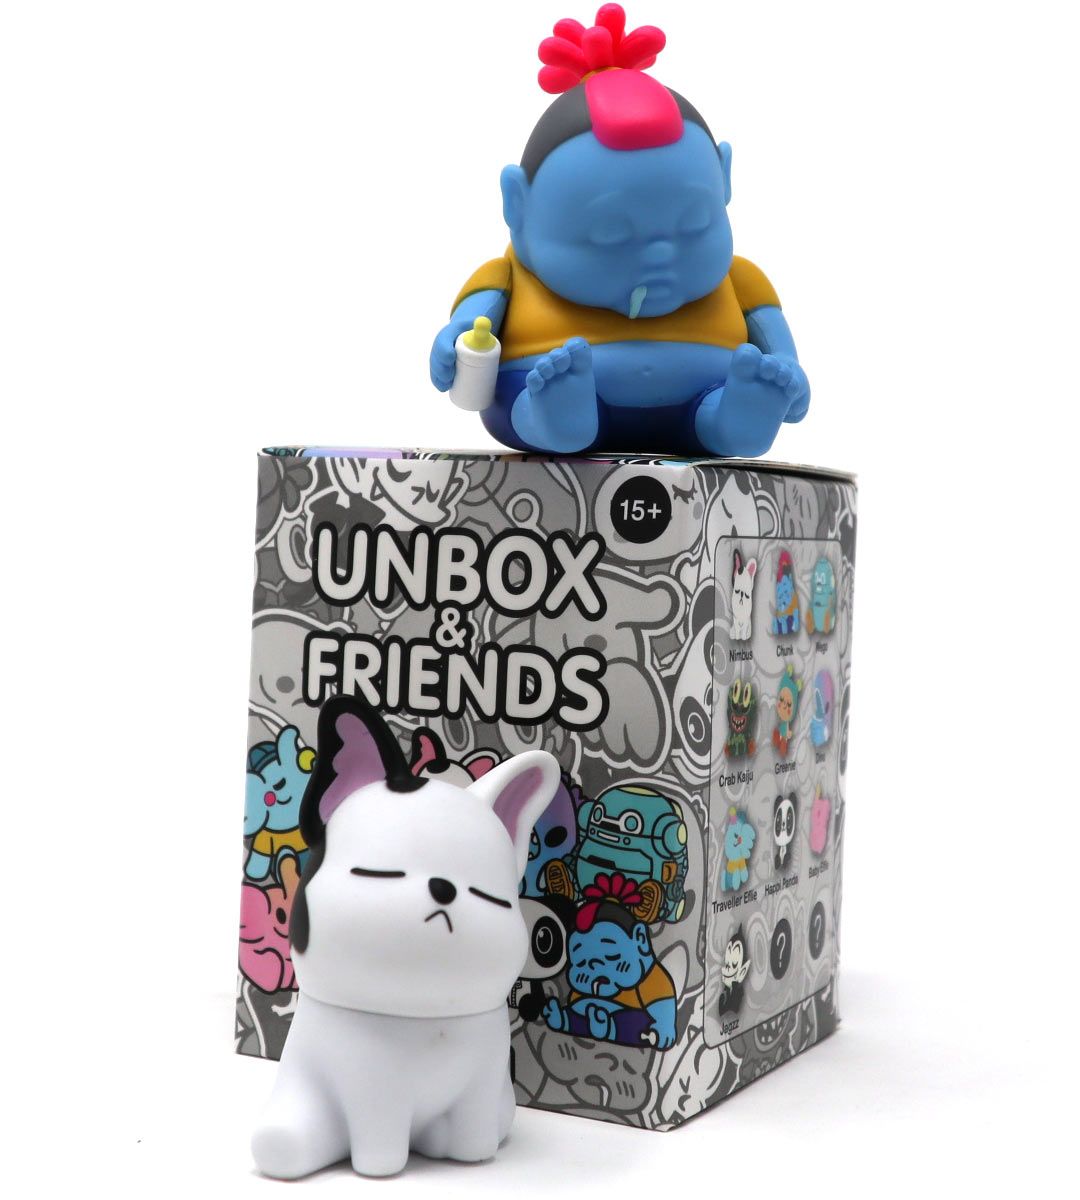 Unbox & Friends